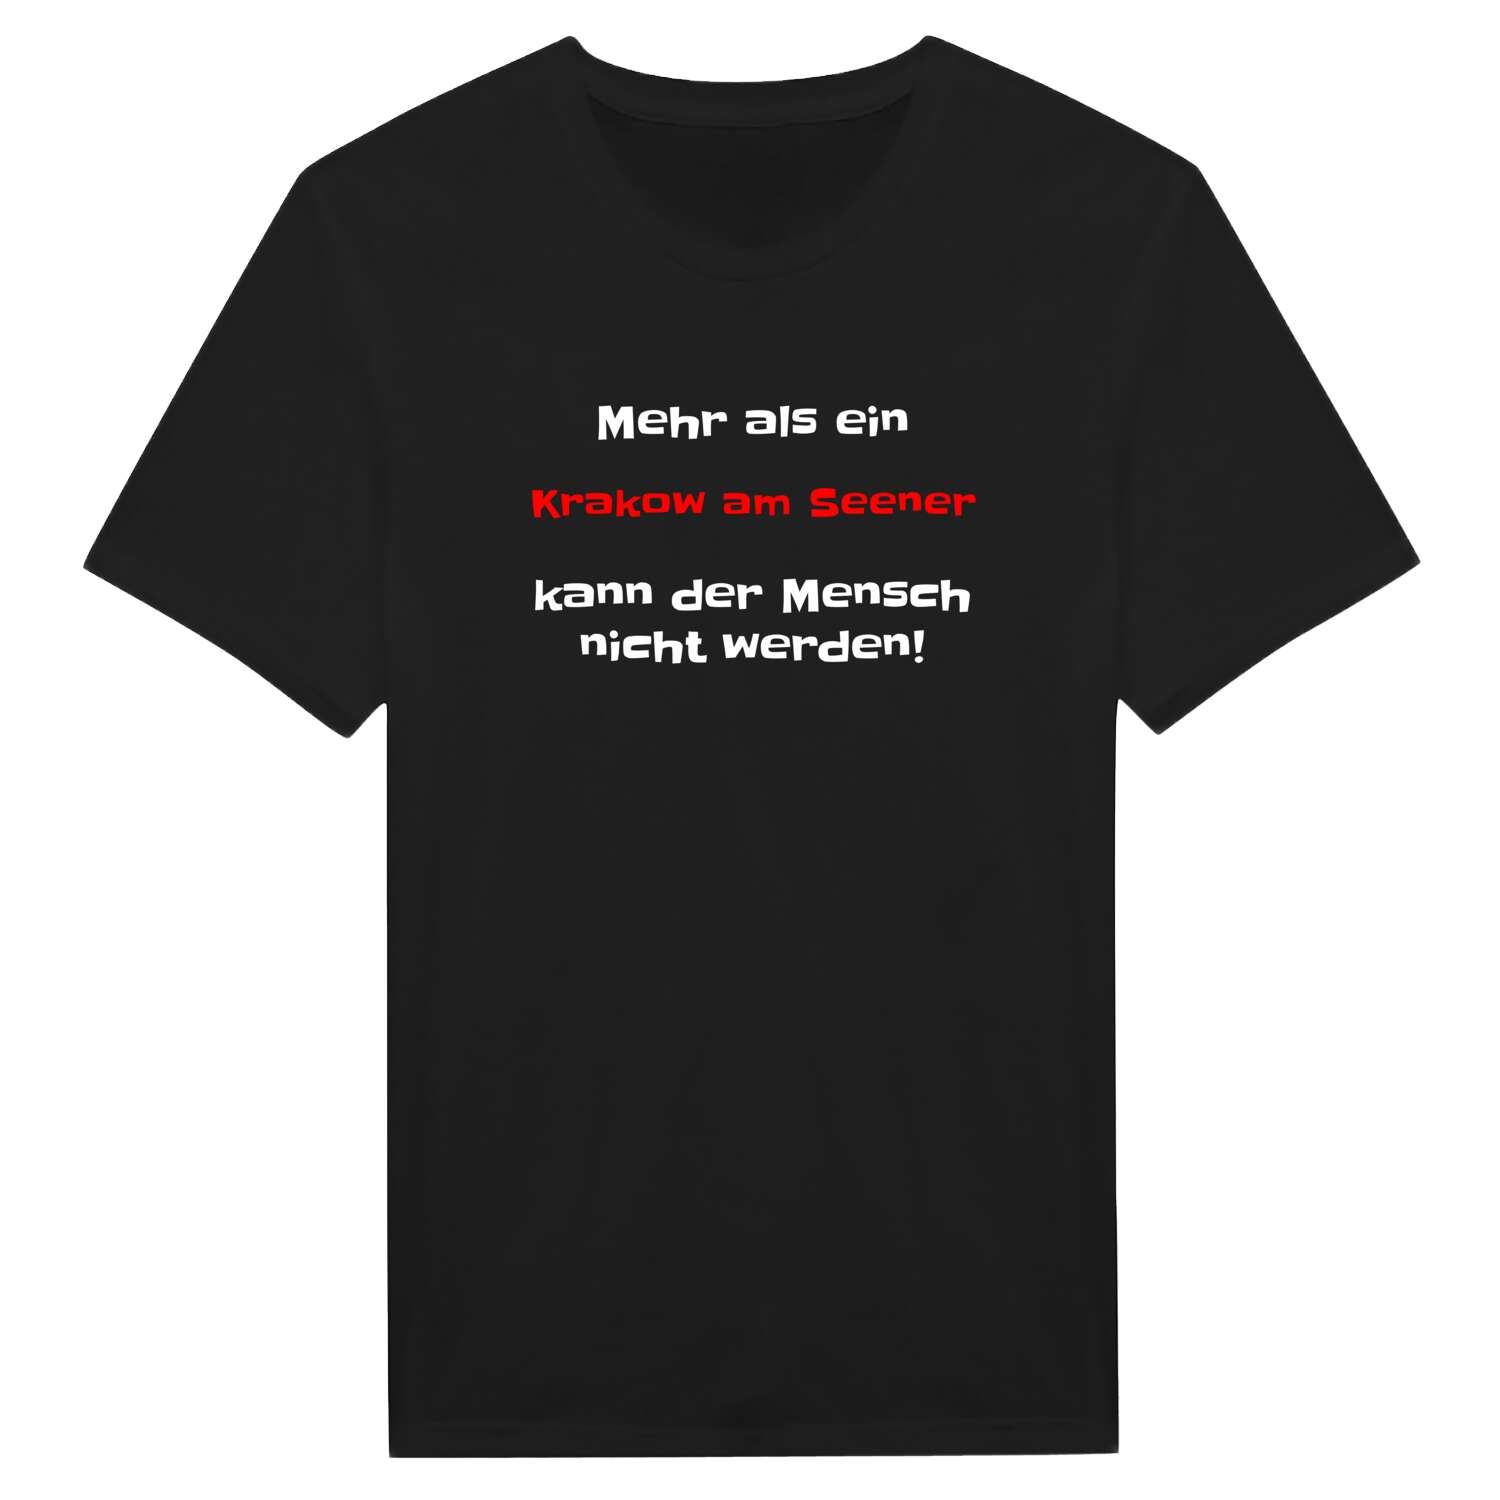 Krakow am See T-Shirt »Mehr als ein«